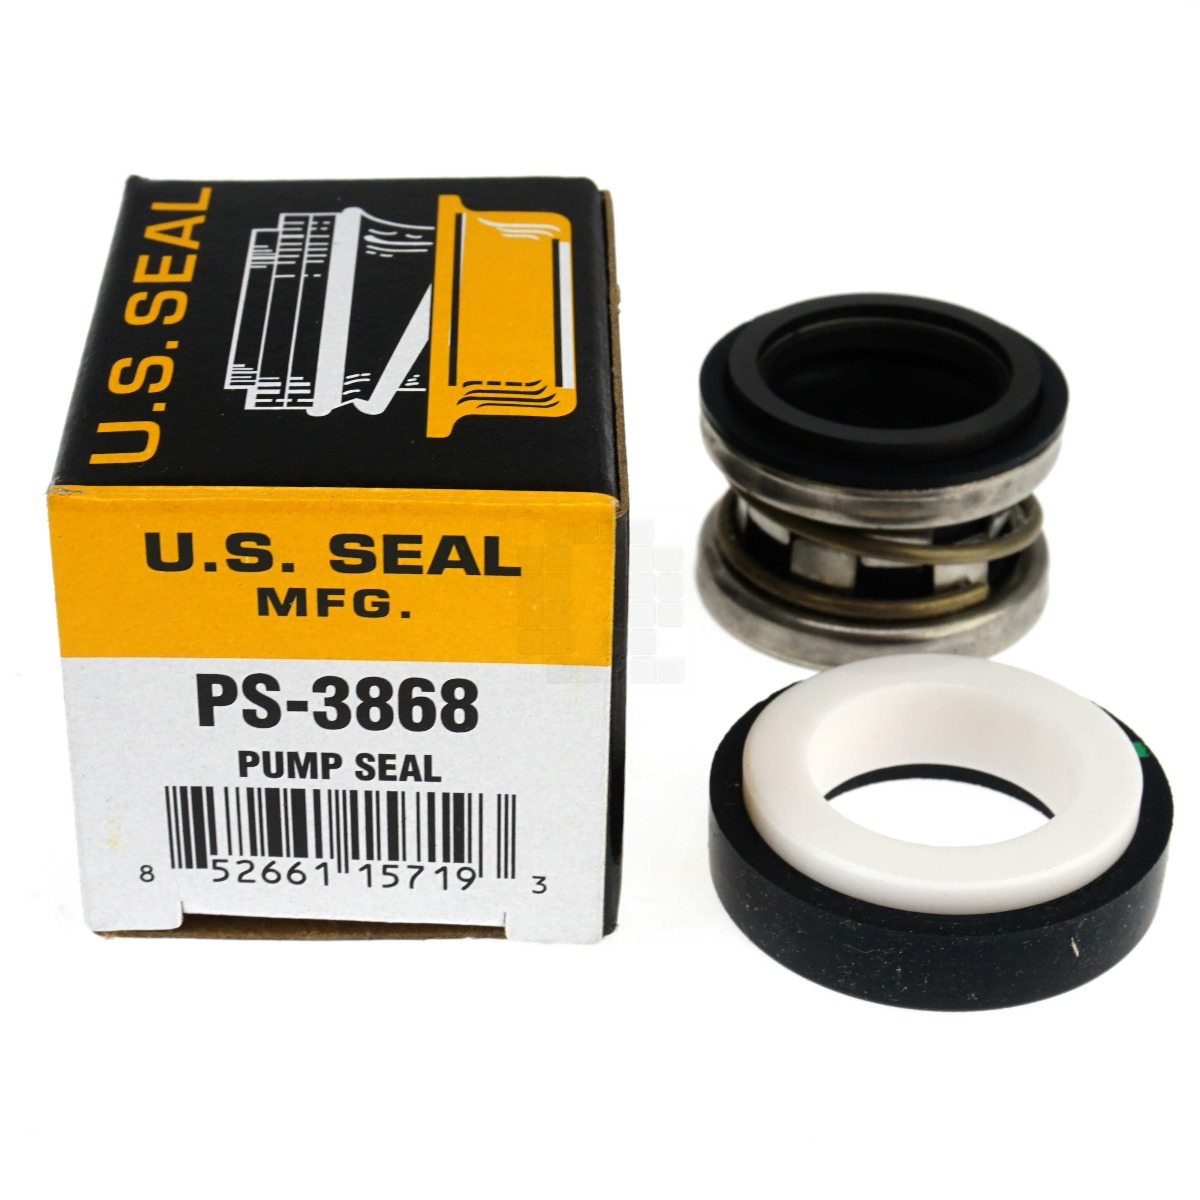 US Seal Mfg PS-3868 3/4" Pump Seal